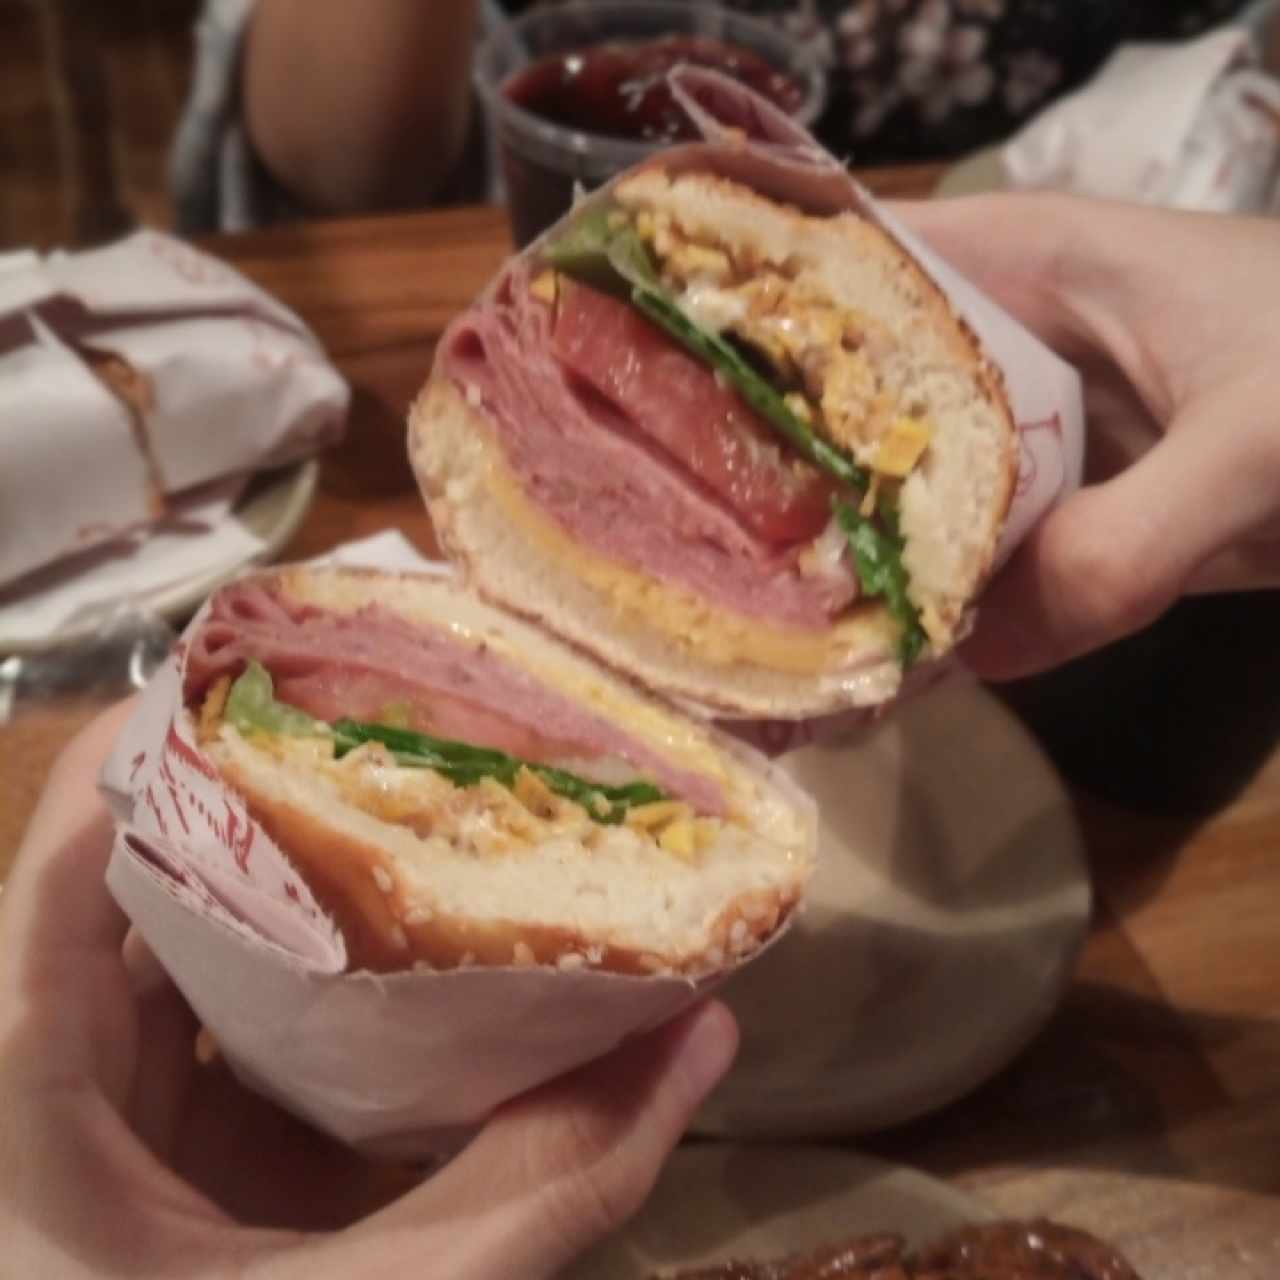 sandwiche con mano como referencia 